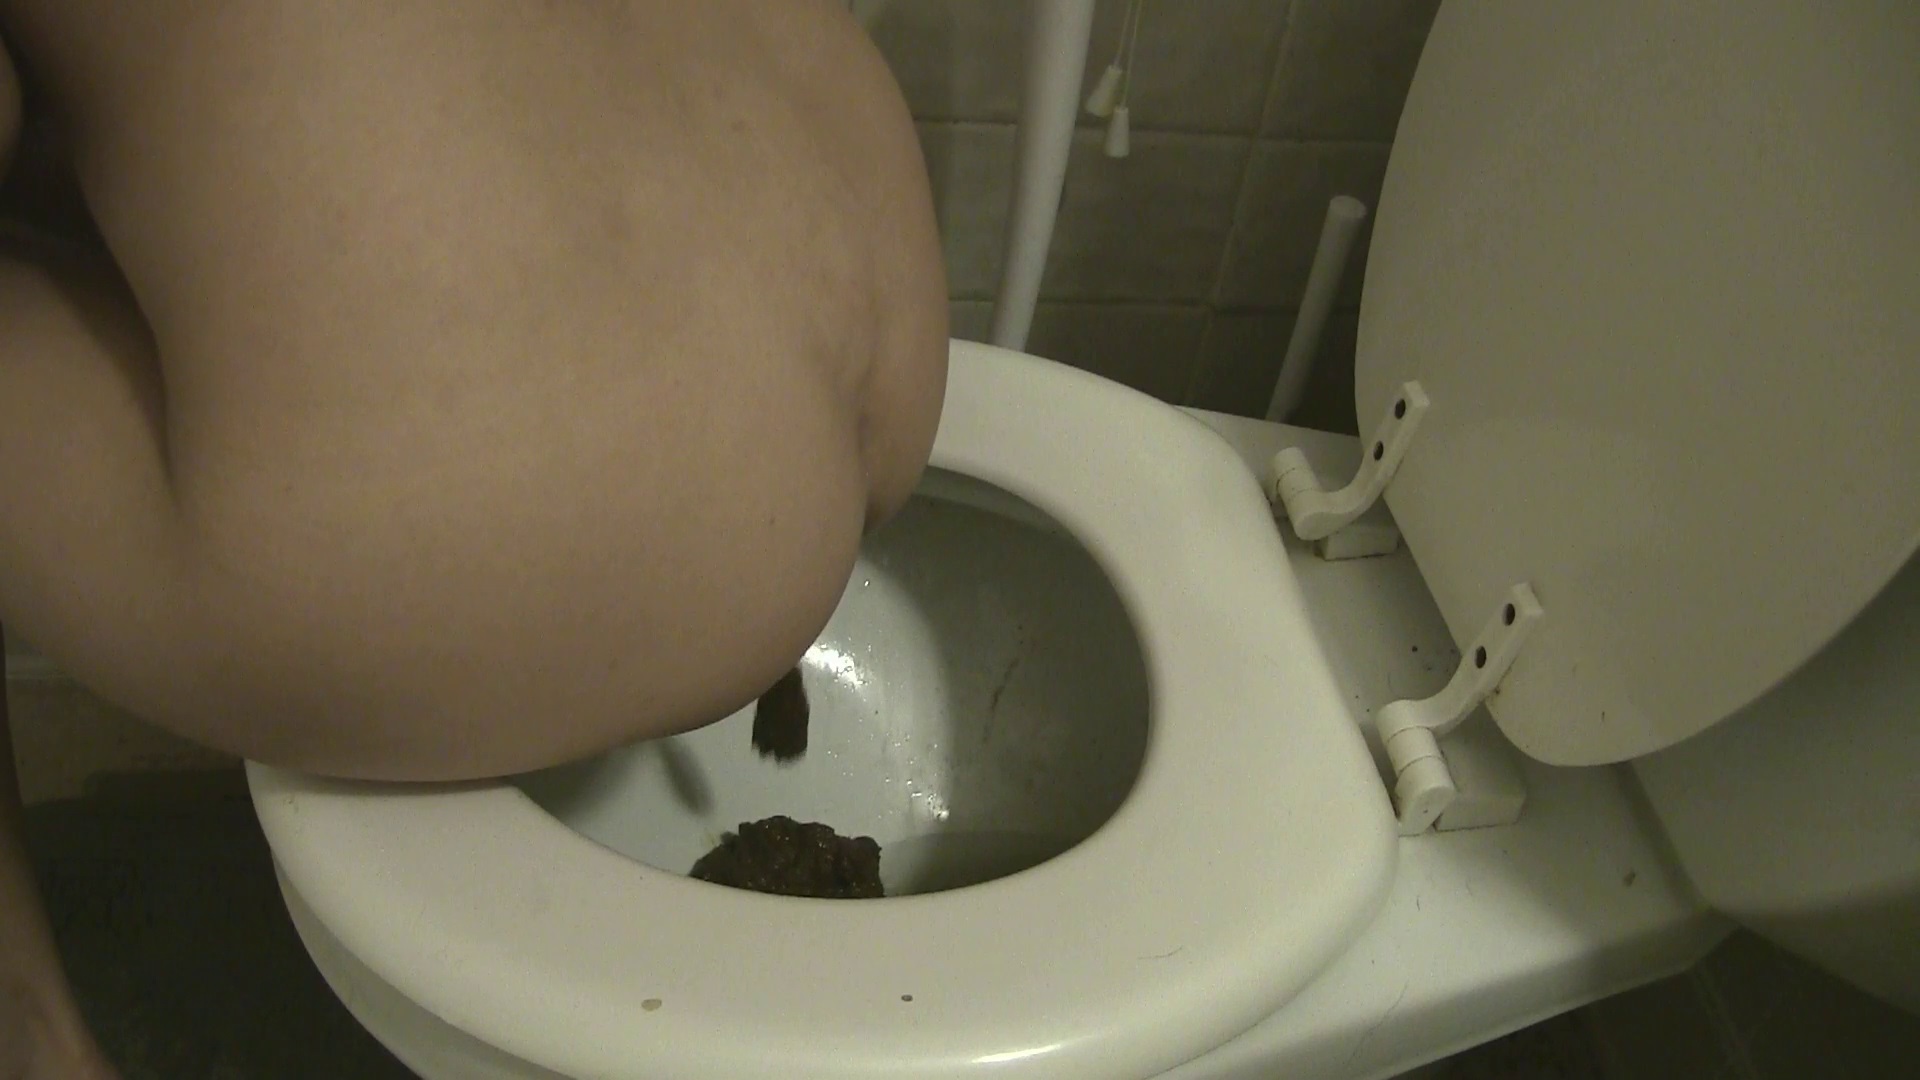 Christmas Poop - video 2